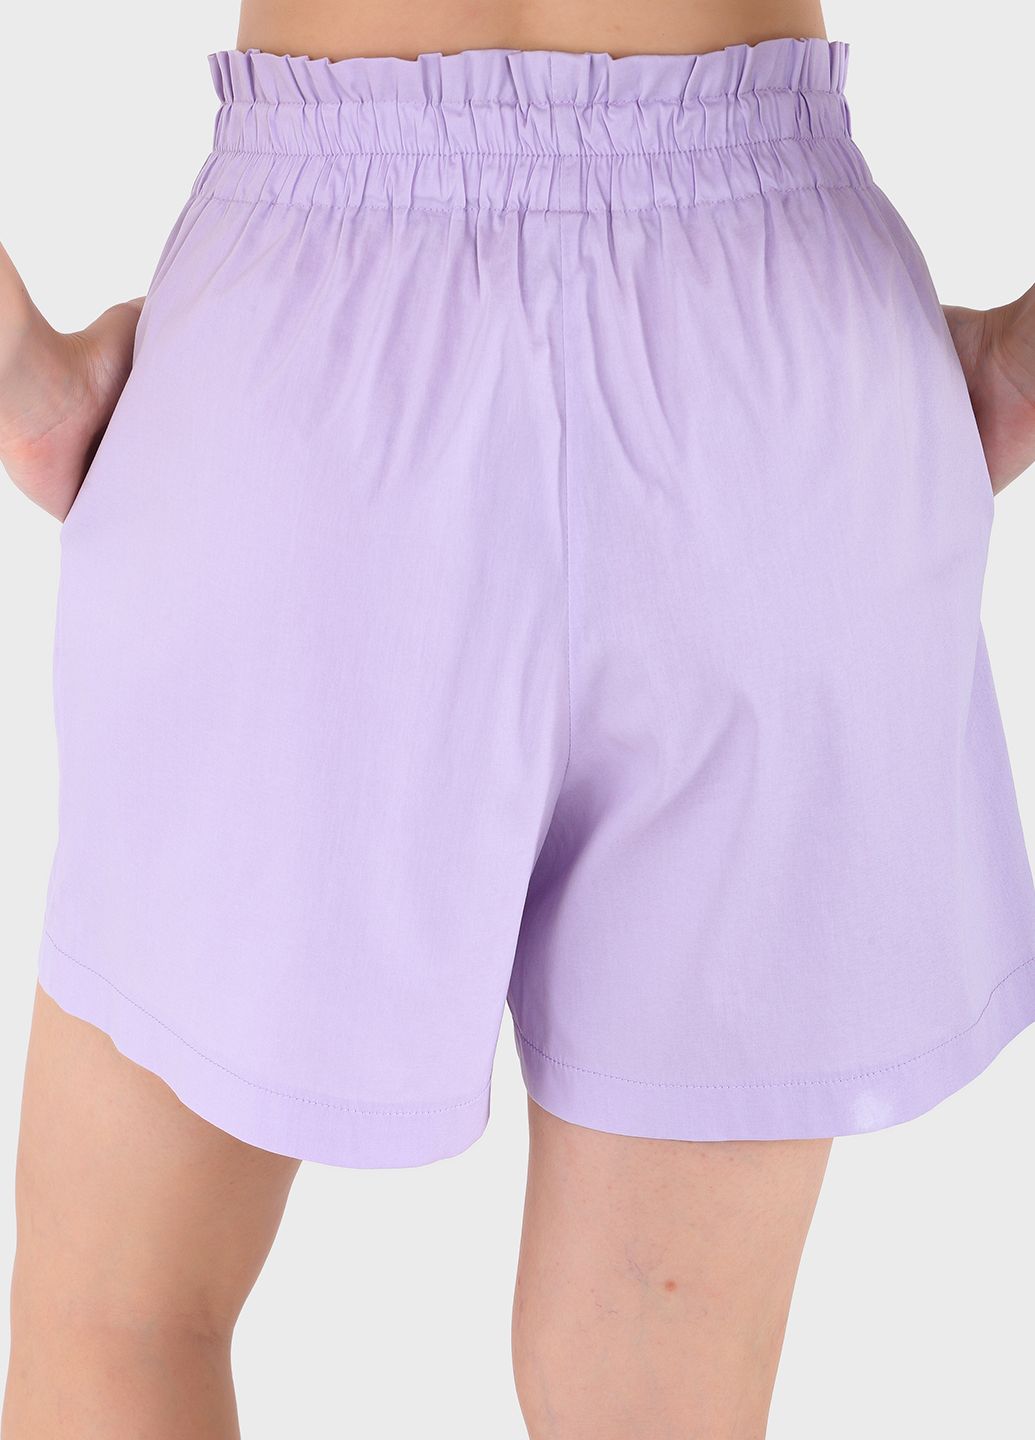 Купить Оверсайз хлопковая футболка женская сиреневого цвета Merlini Ливорно 800000040, размер 42-44 в интернет-магазине